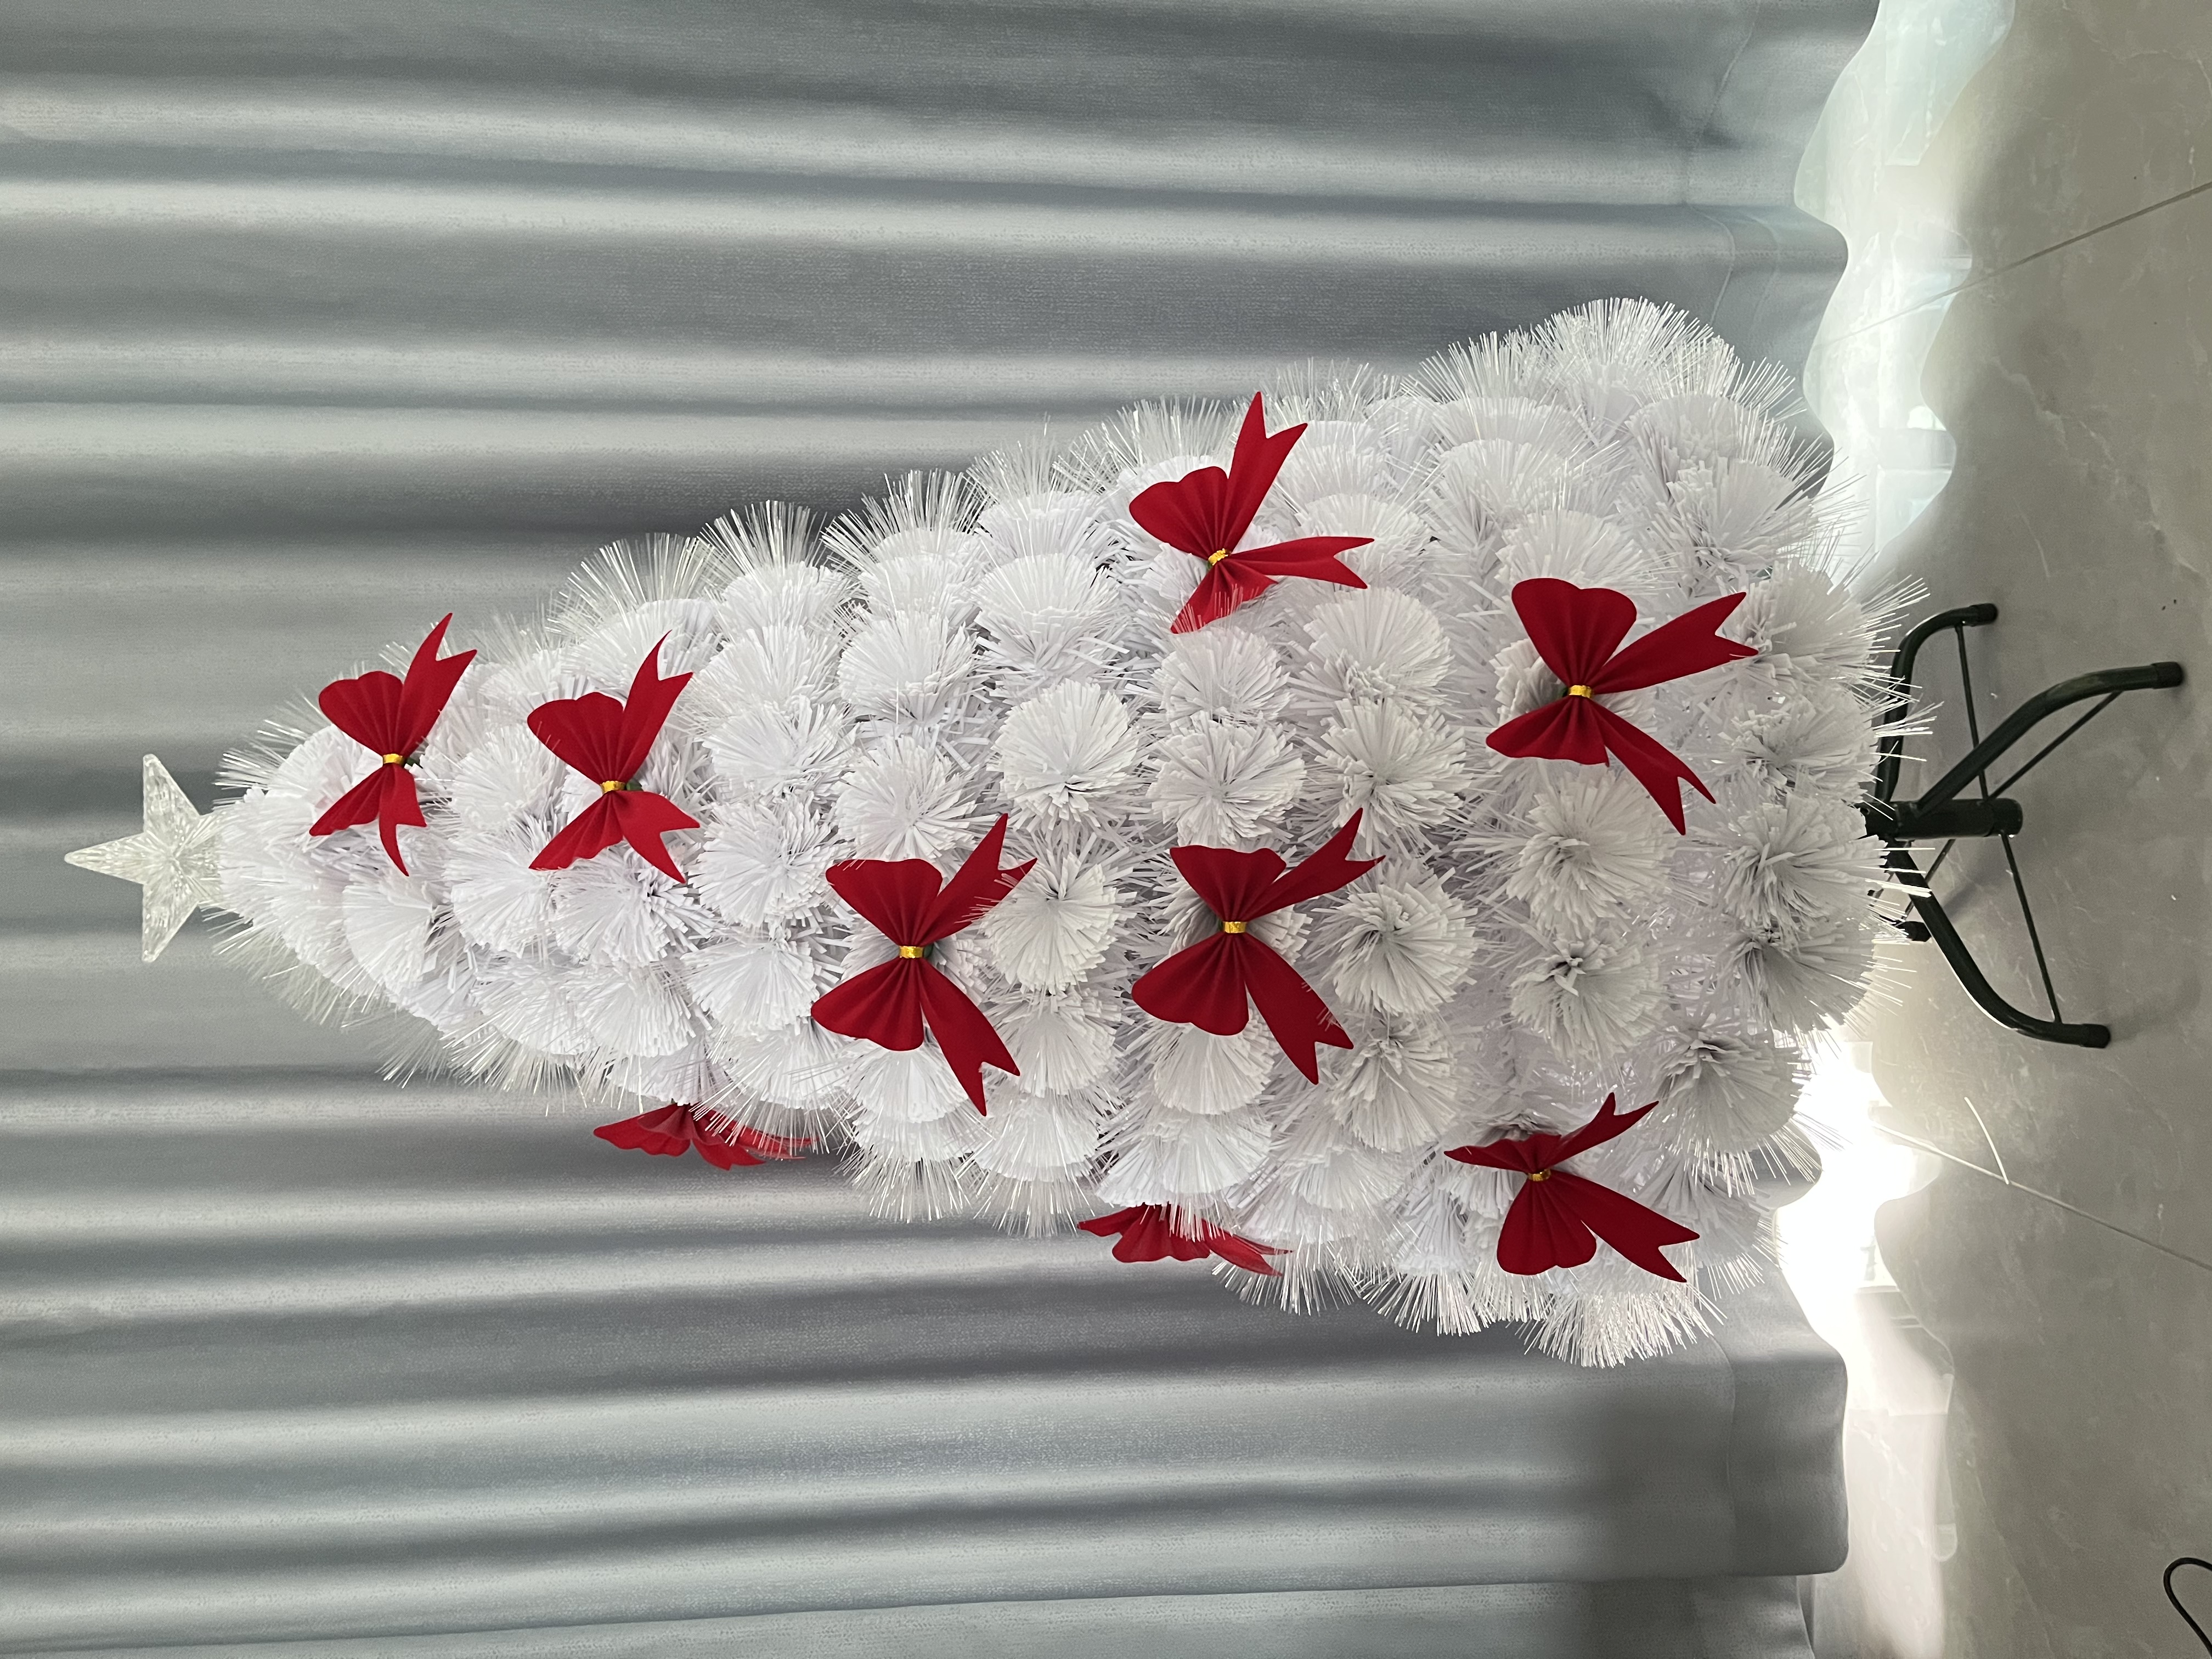 厂家直销 节日装扮 圣诞礼品蝴蝶结 装饰品 圣诞节气氛布置 必备品